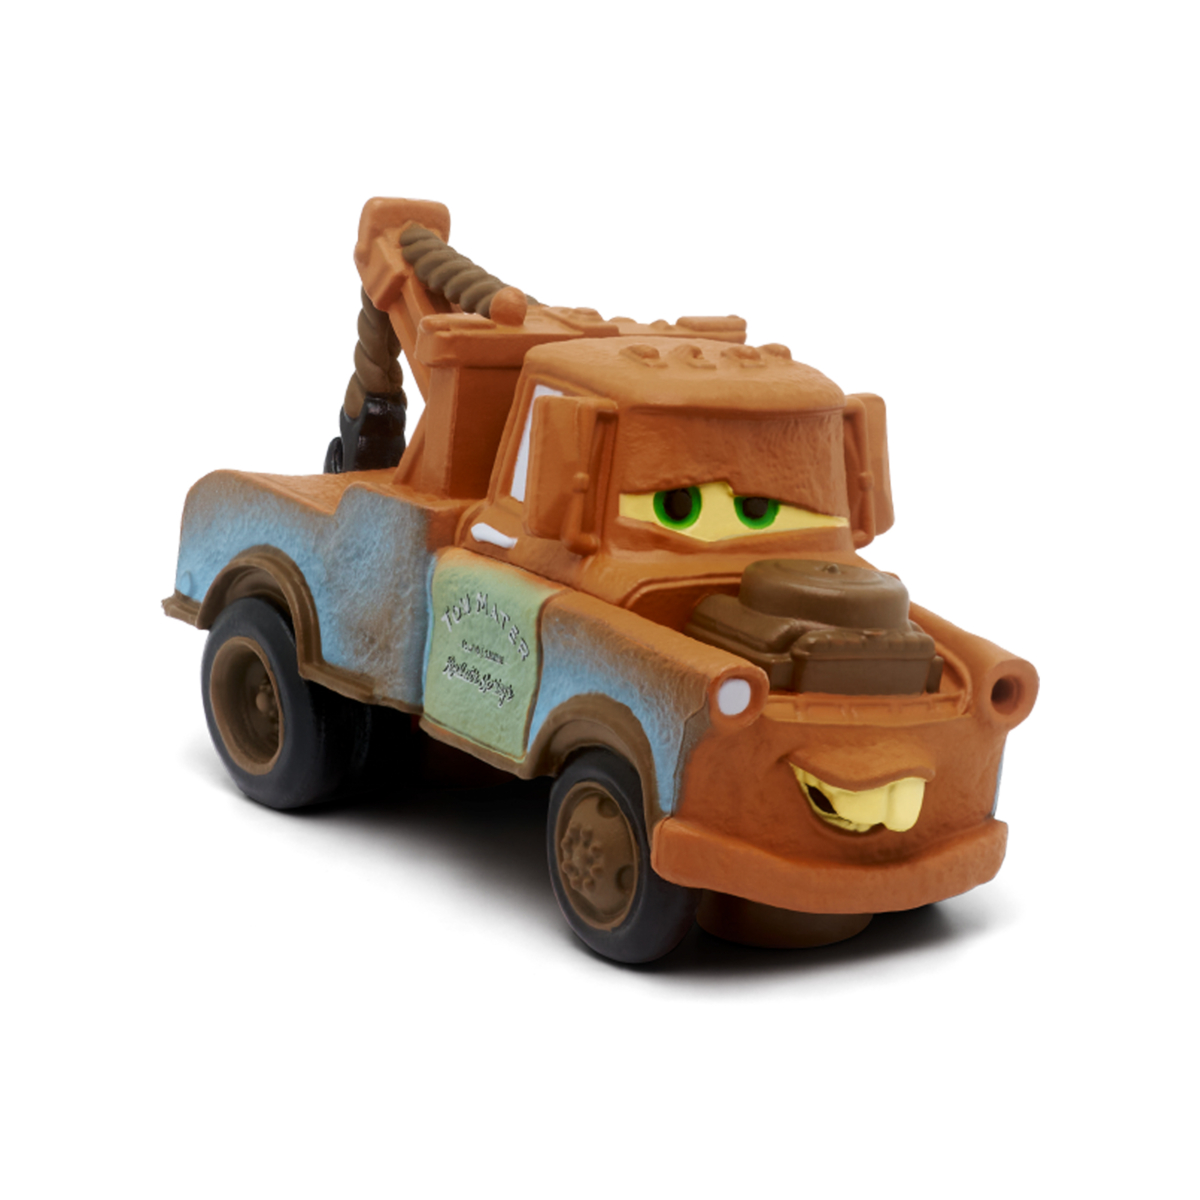 Tonies Audio Character- Lightning McQueen from Disney Pixar Cars